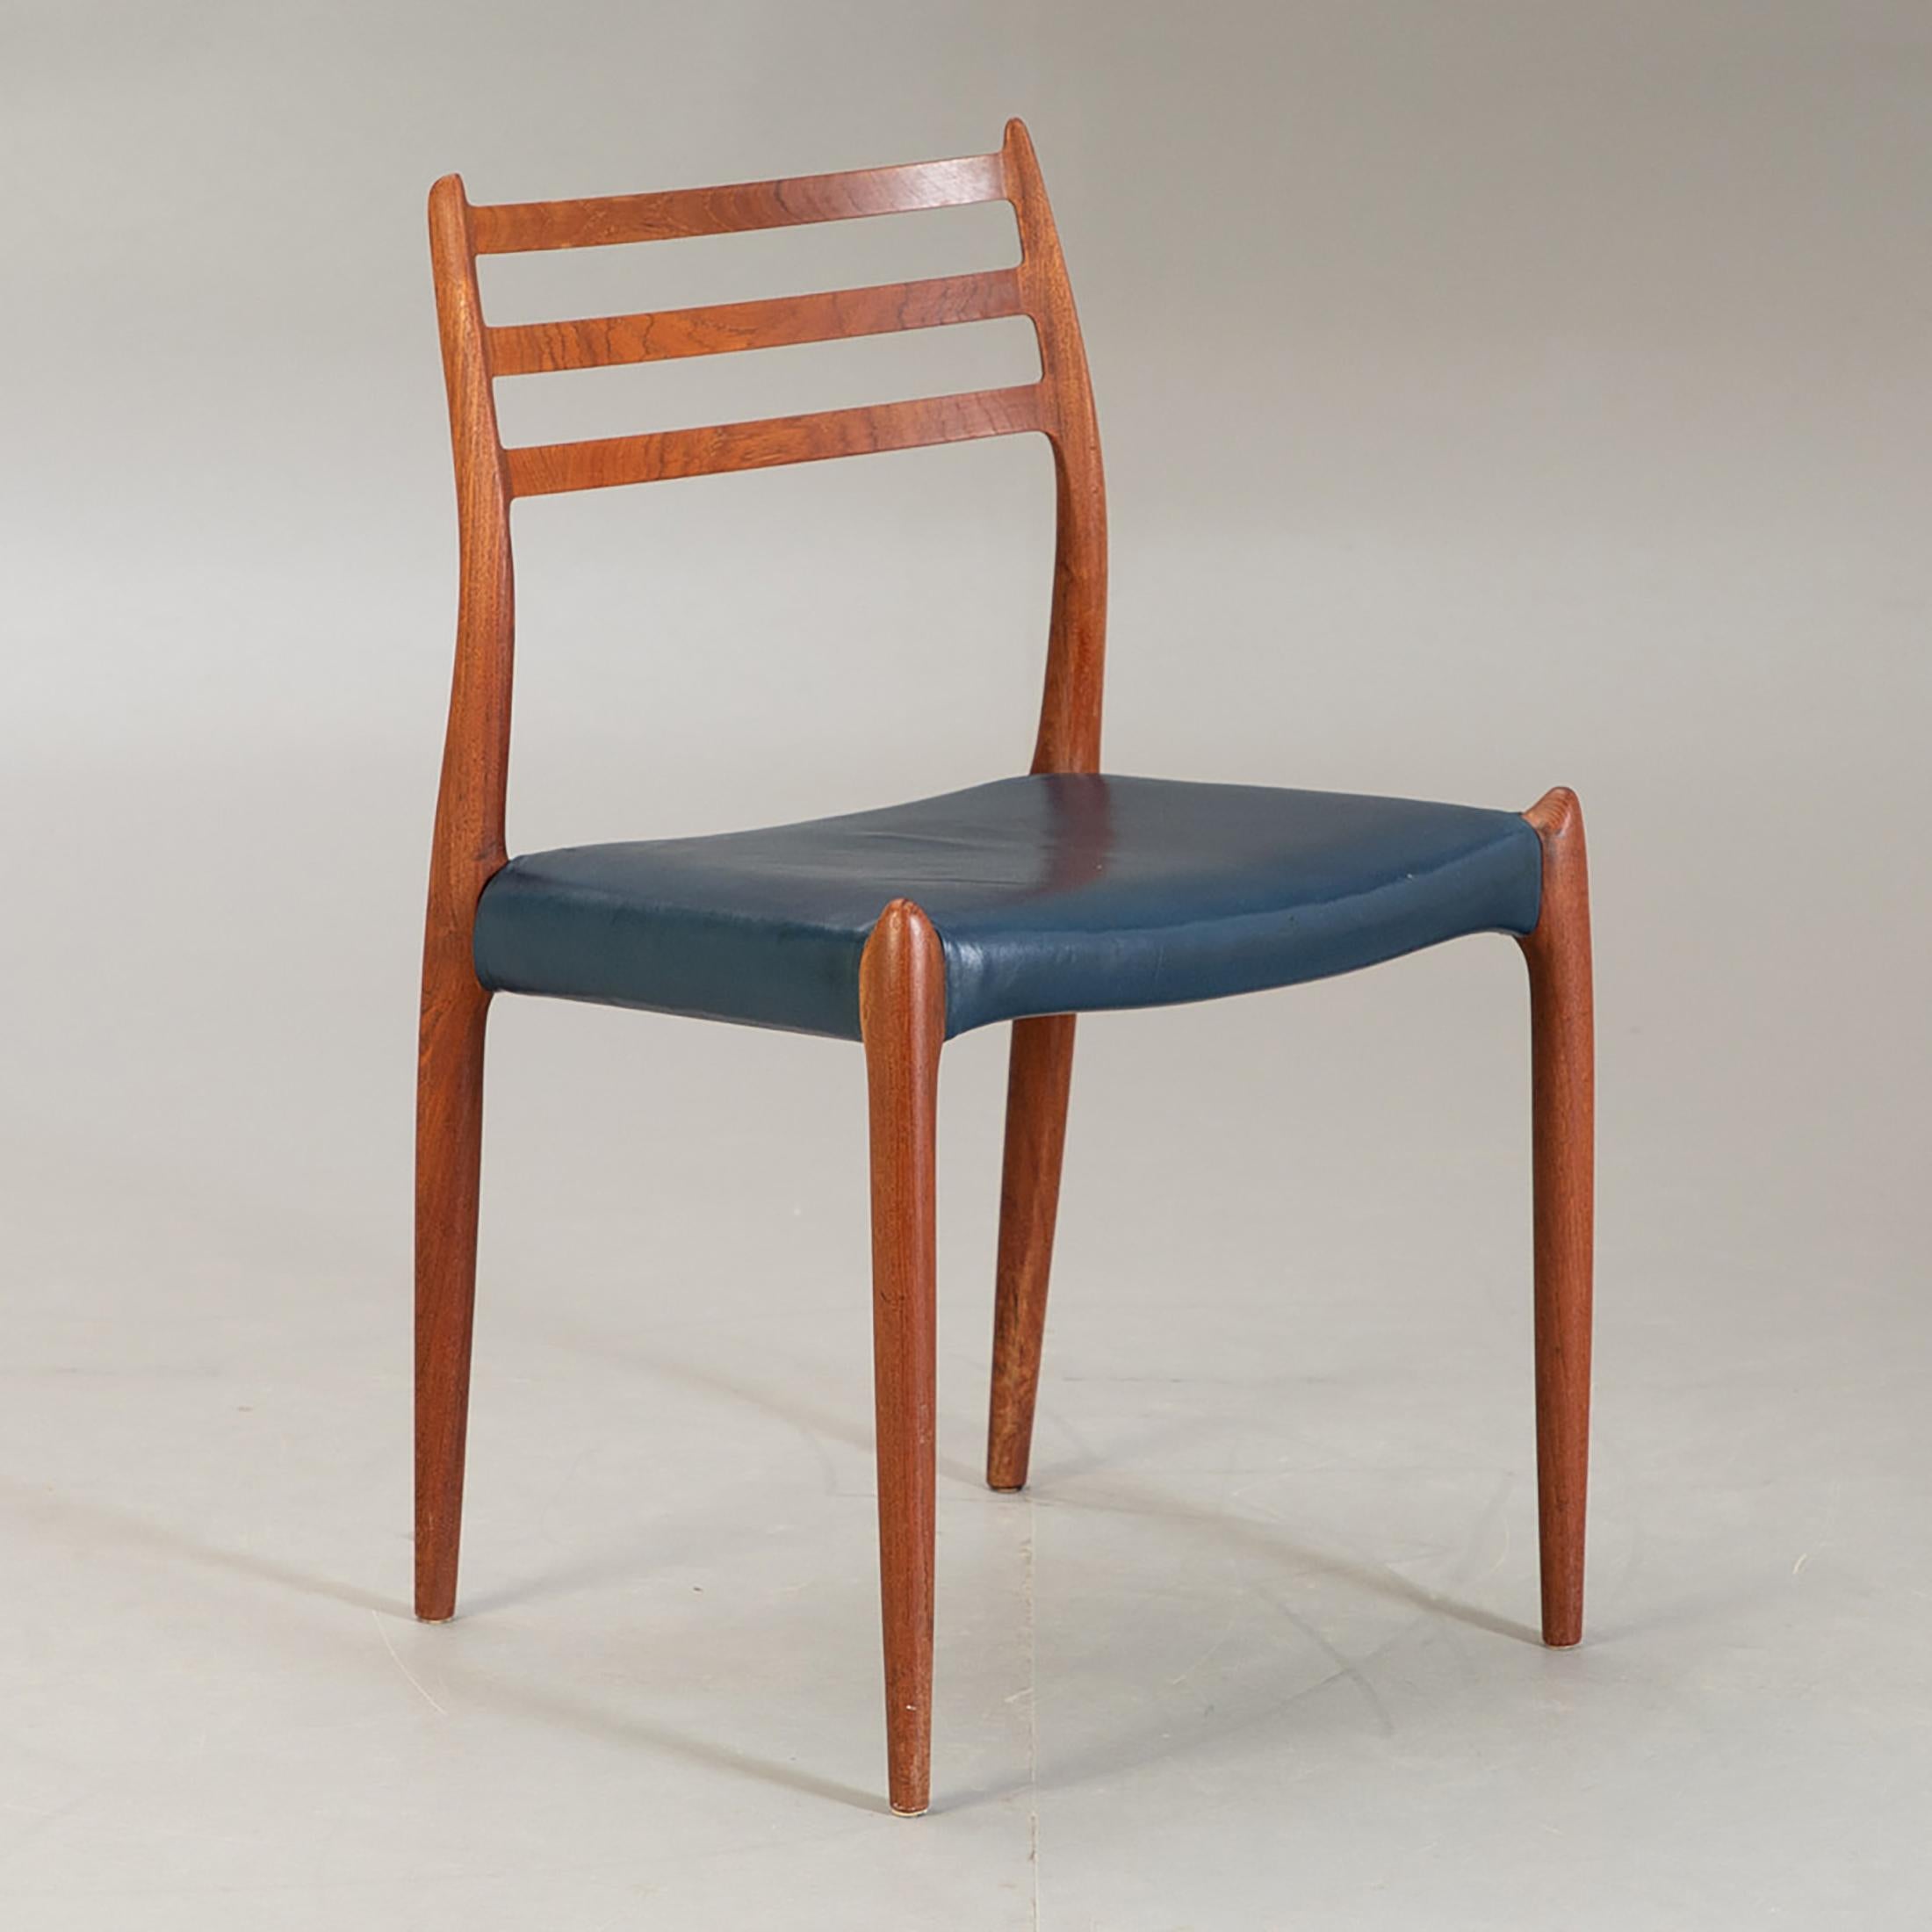 Chaises de salle à manger en bois dur massif, conçues dans les années 1950 par Niels Otto Møller et produites par J. L. Møller Møbelfabrik, numéro de modèle 78. État original. Le délai de livraison est d'environ 1 à 2 semaines. Possibilité d'une